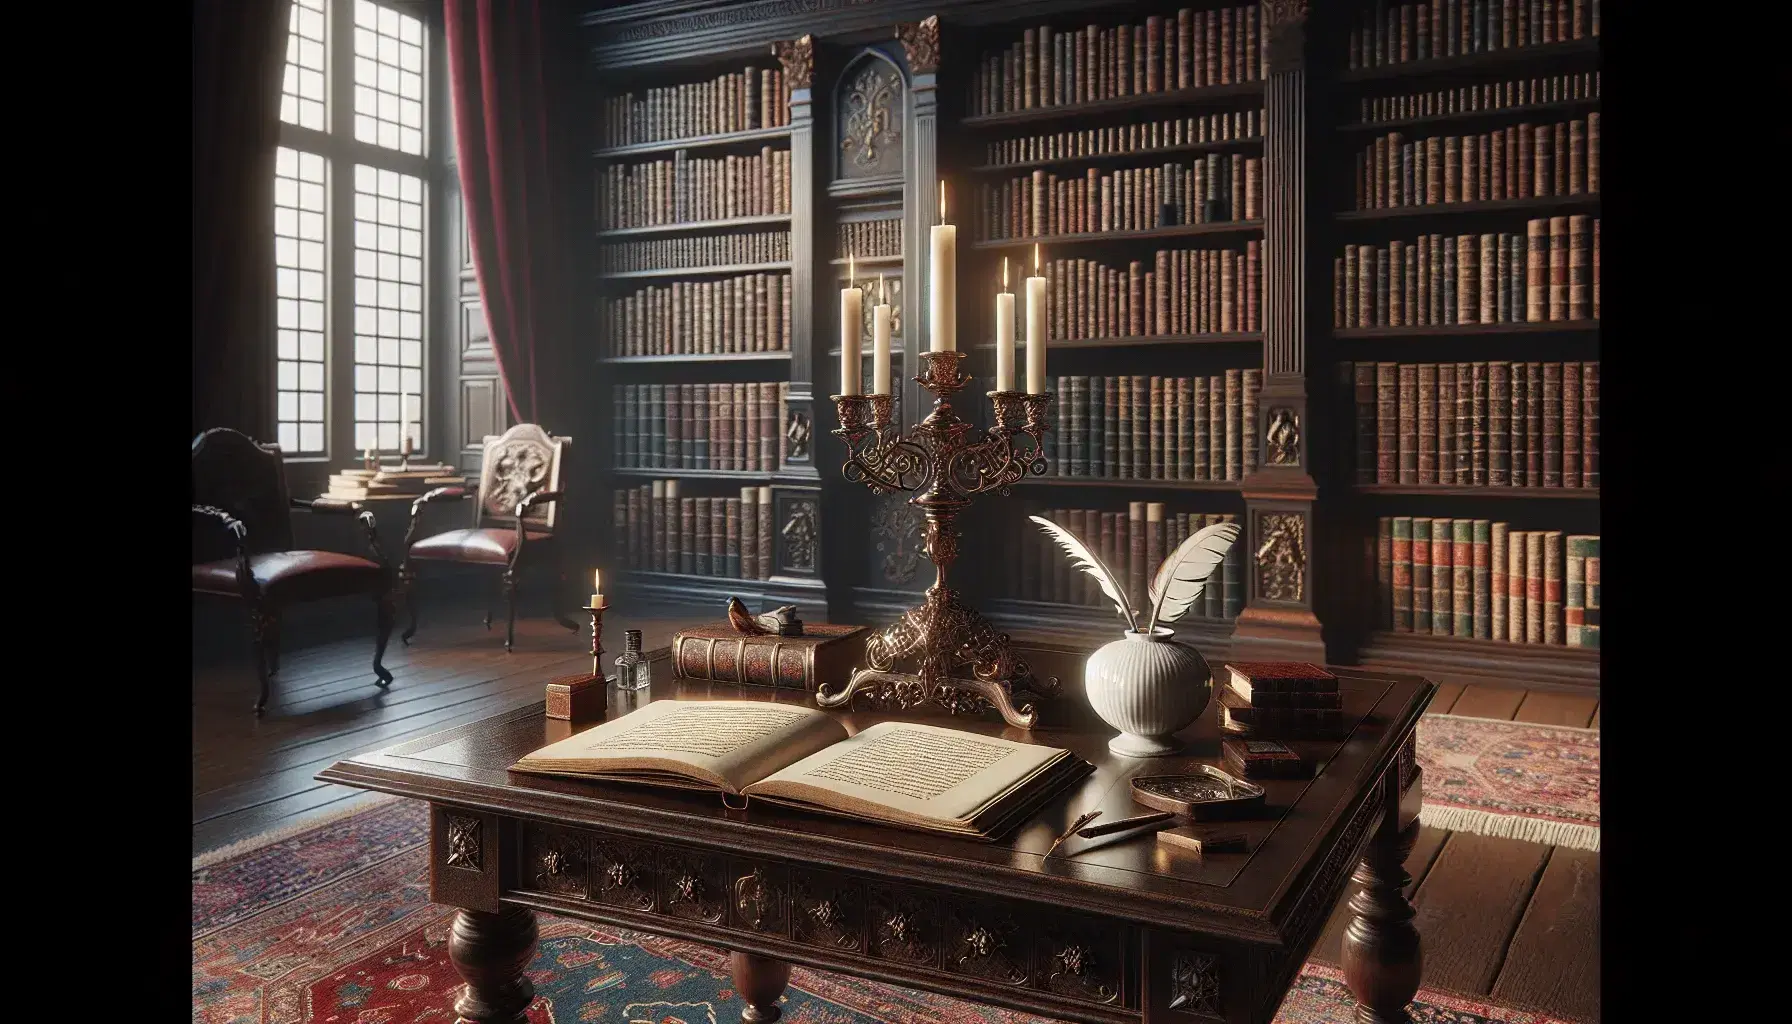 Biblioteca antigua con estanterías de madera oscura llenas de libros, mesa central con candelabro de bronce y tintero, alfombra persa y cortinas de terciopelo rojo.